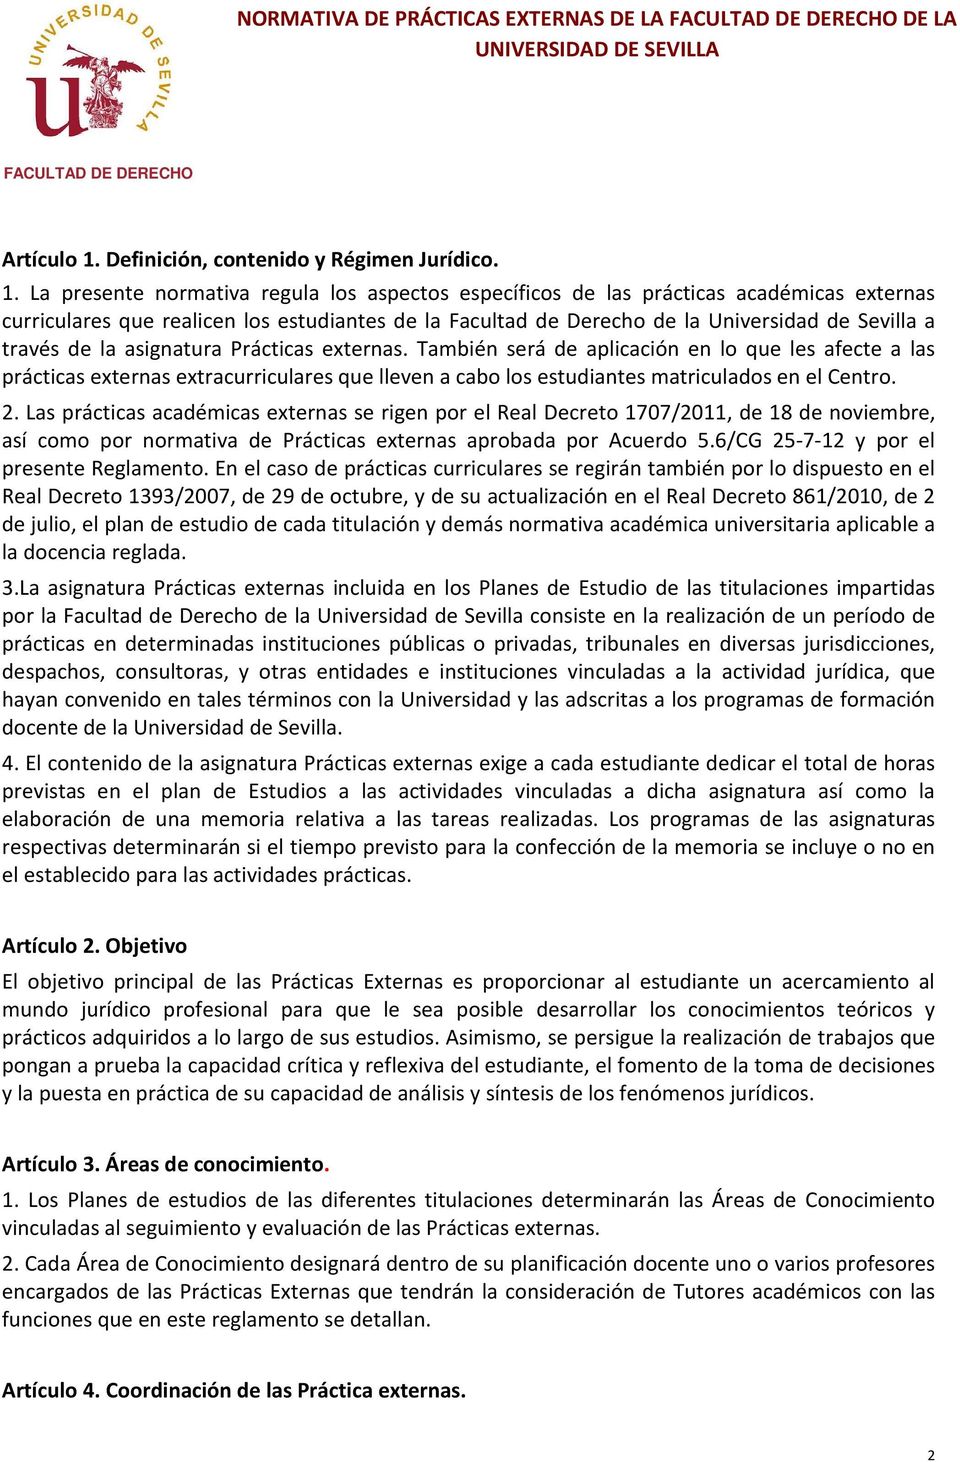 La presente normativa regula los aspectos específicos de las prácticas académicas externas curriculares que realicen los estudiantes de la Facultad de Derecho de la Universidad de Sevilla a través de